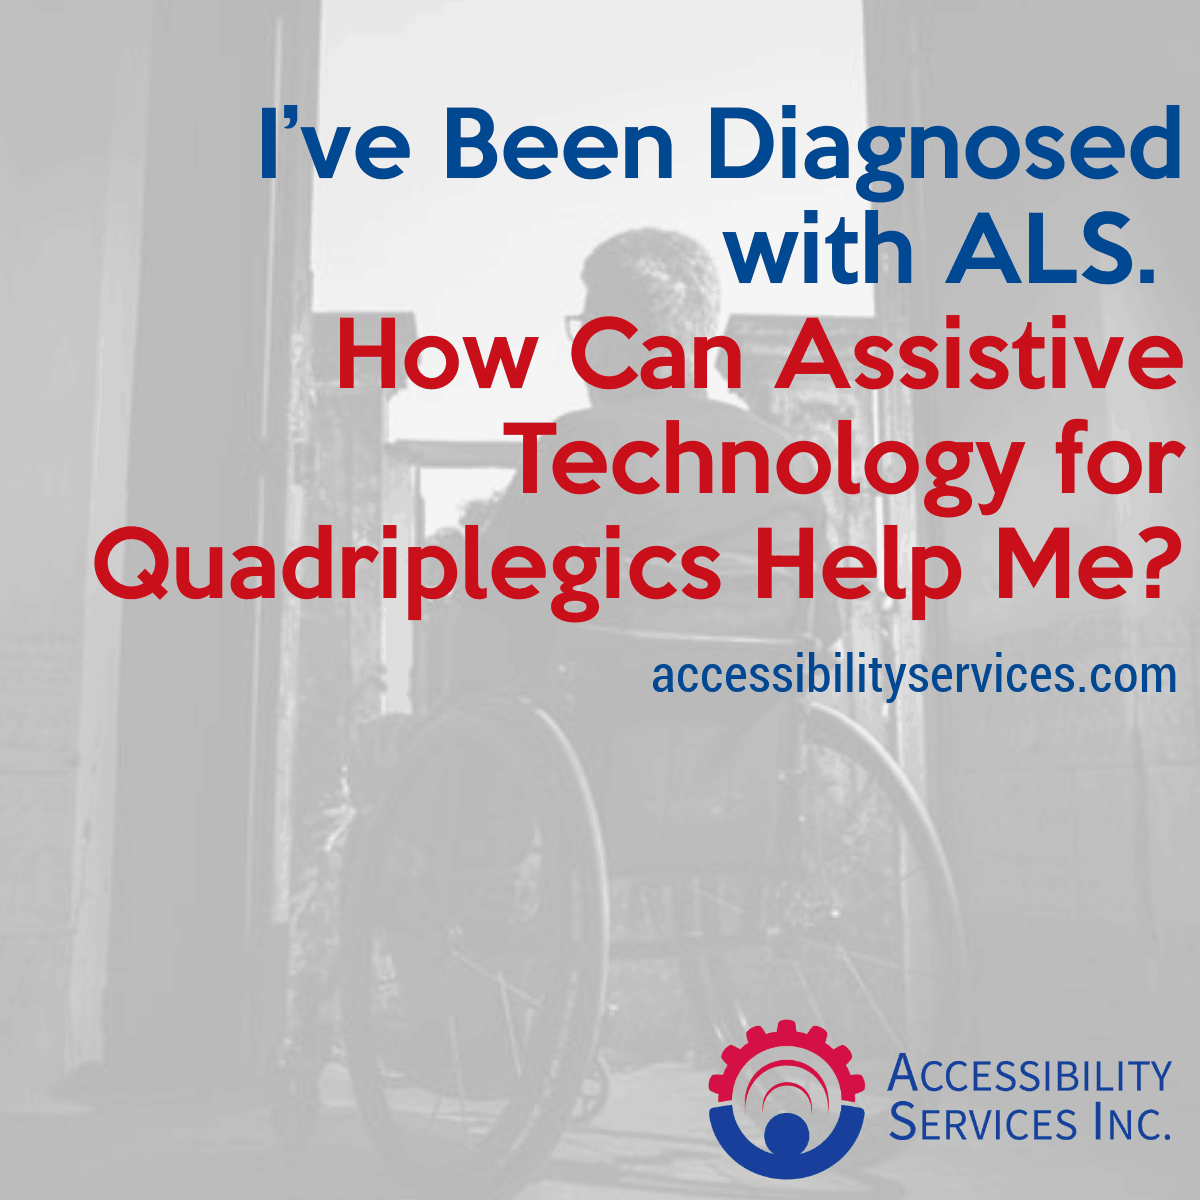 assistive technology for quadriplegics